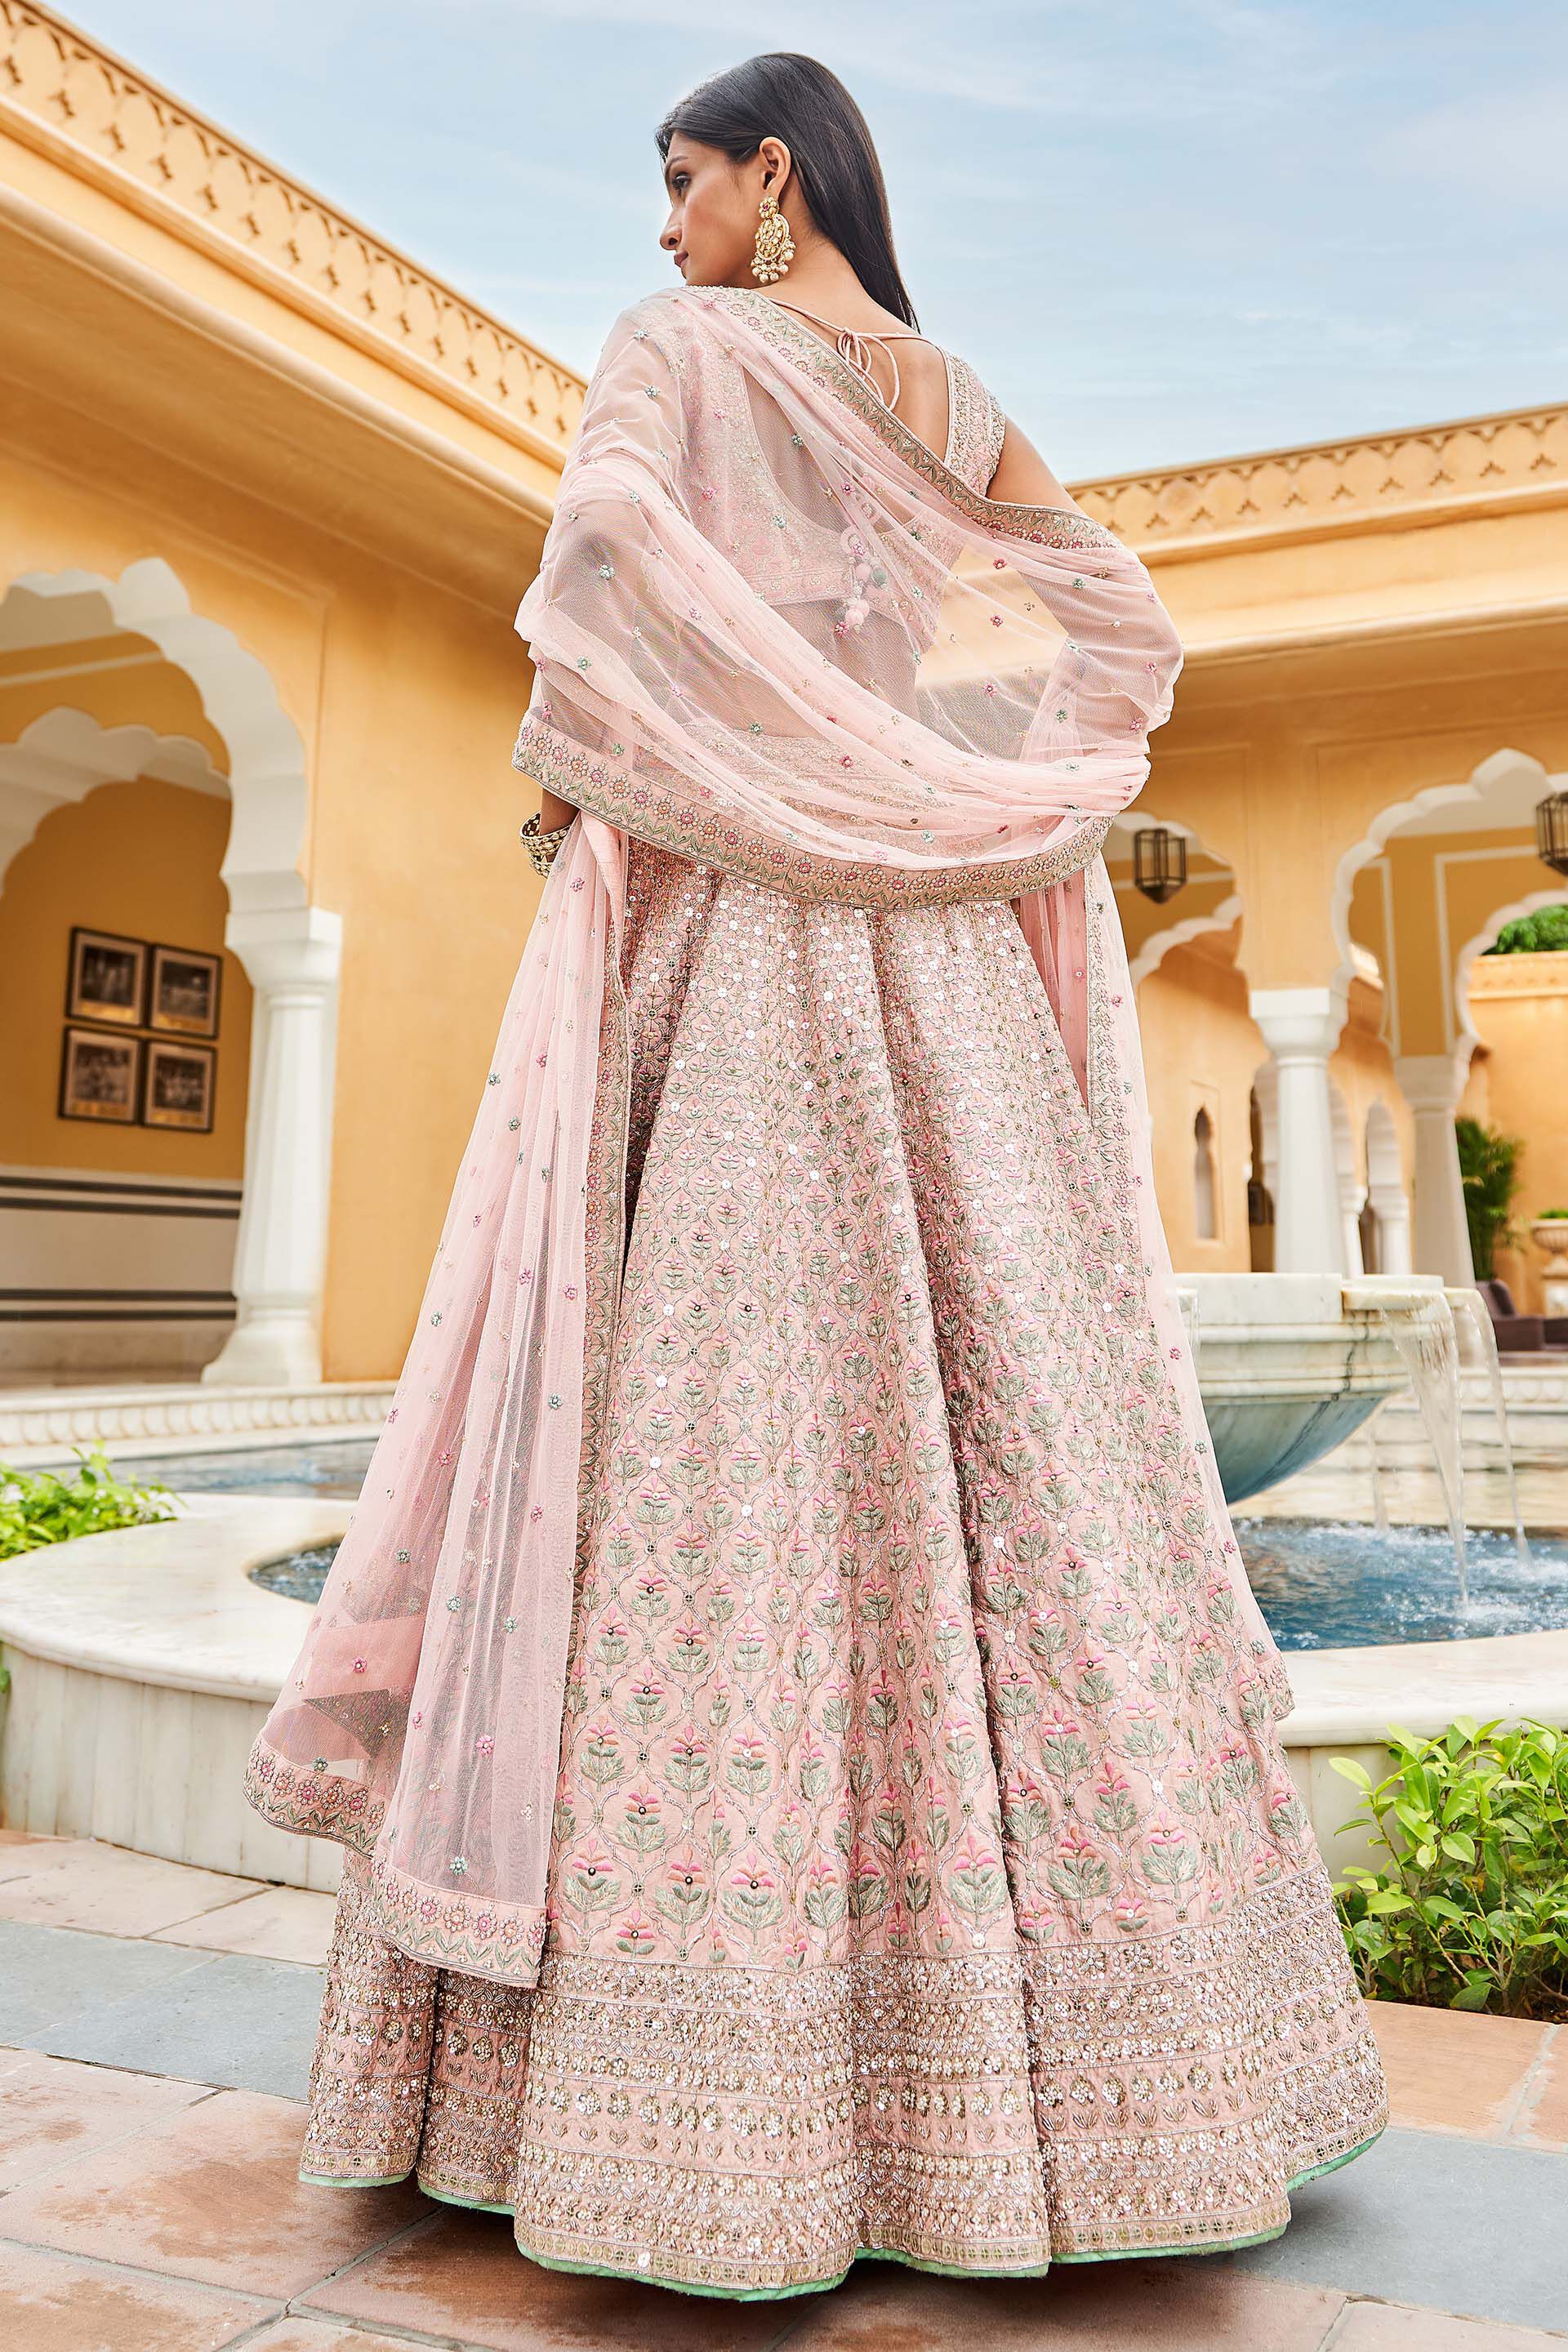 Buy White Short Lehenga Sets for Women Online in India - Indya